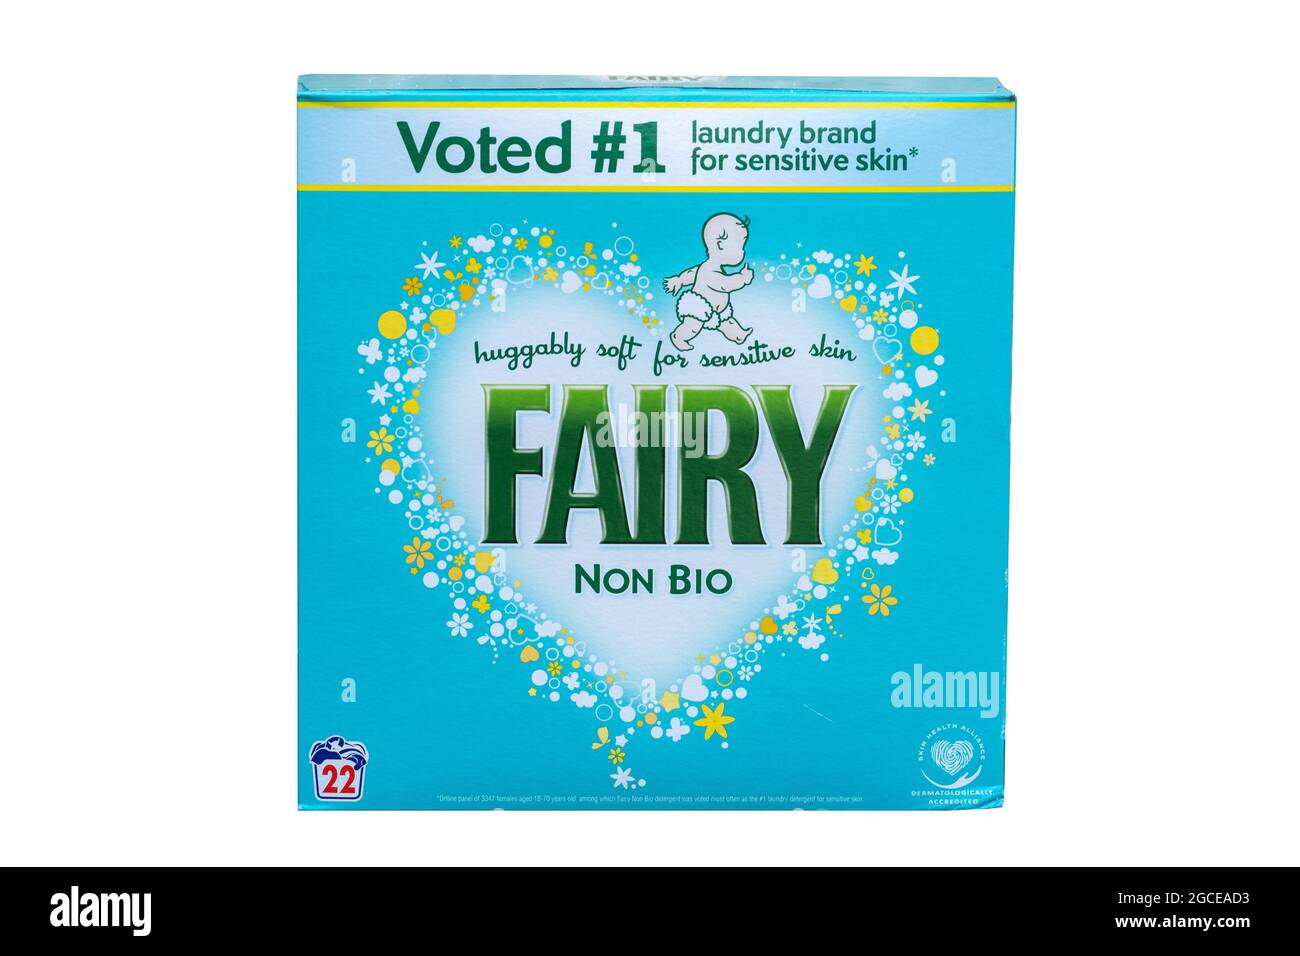 Box of Fairy non bio washing powder on a white background, UK laundry product Stock Photo